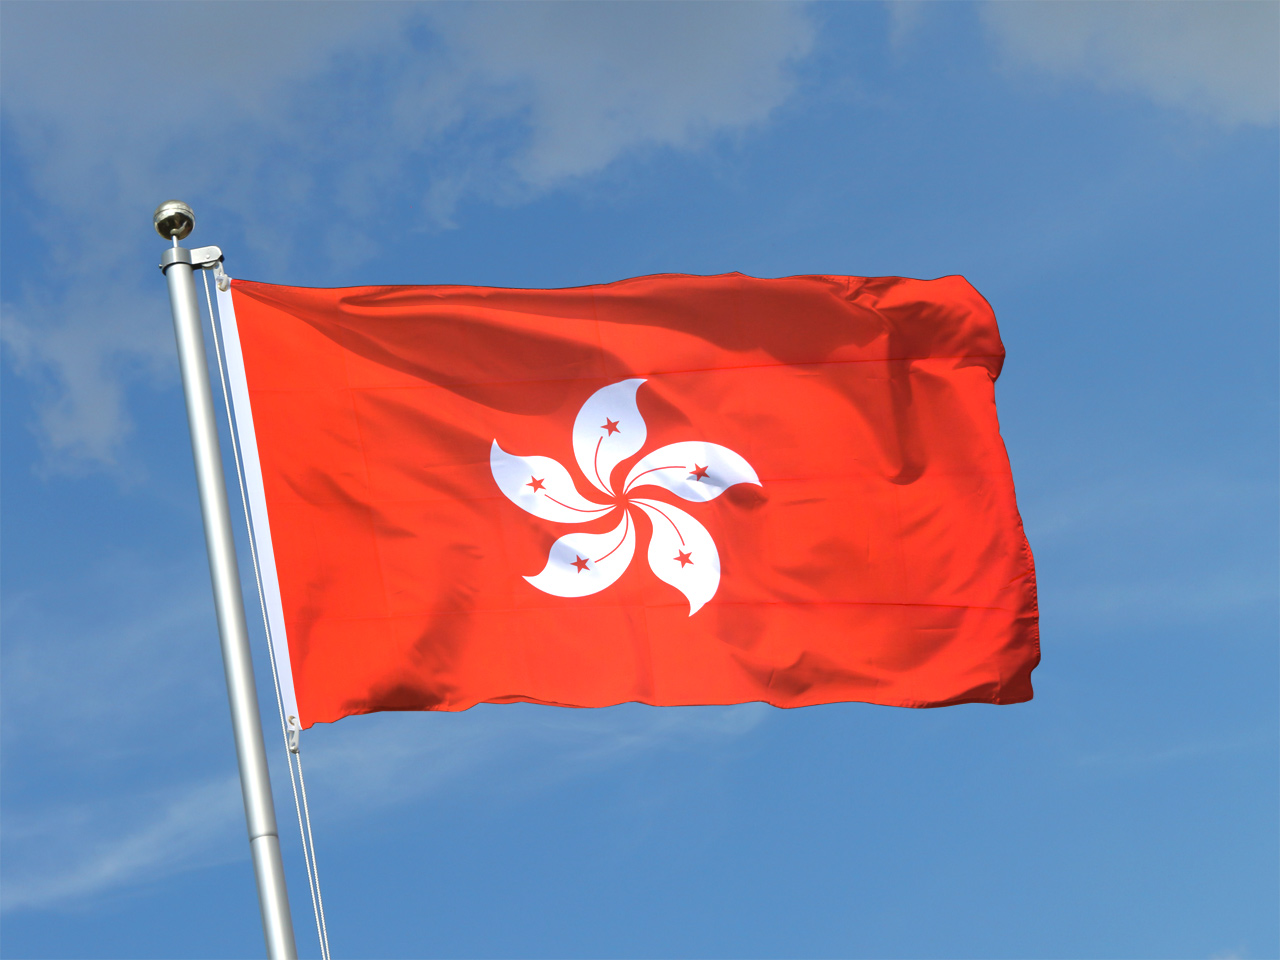 Hong Kong Flagge - Hongkong Fahne kaufen - FlaggenPlatz